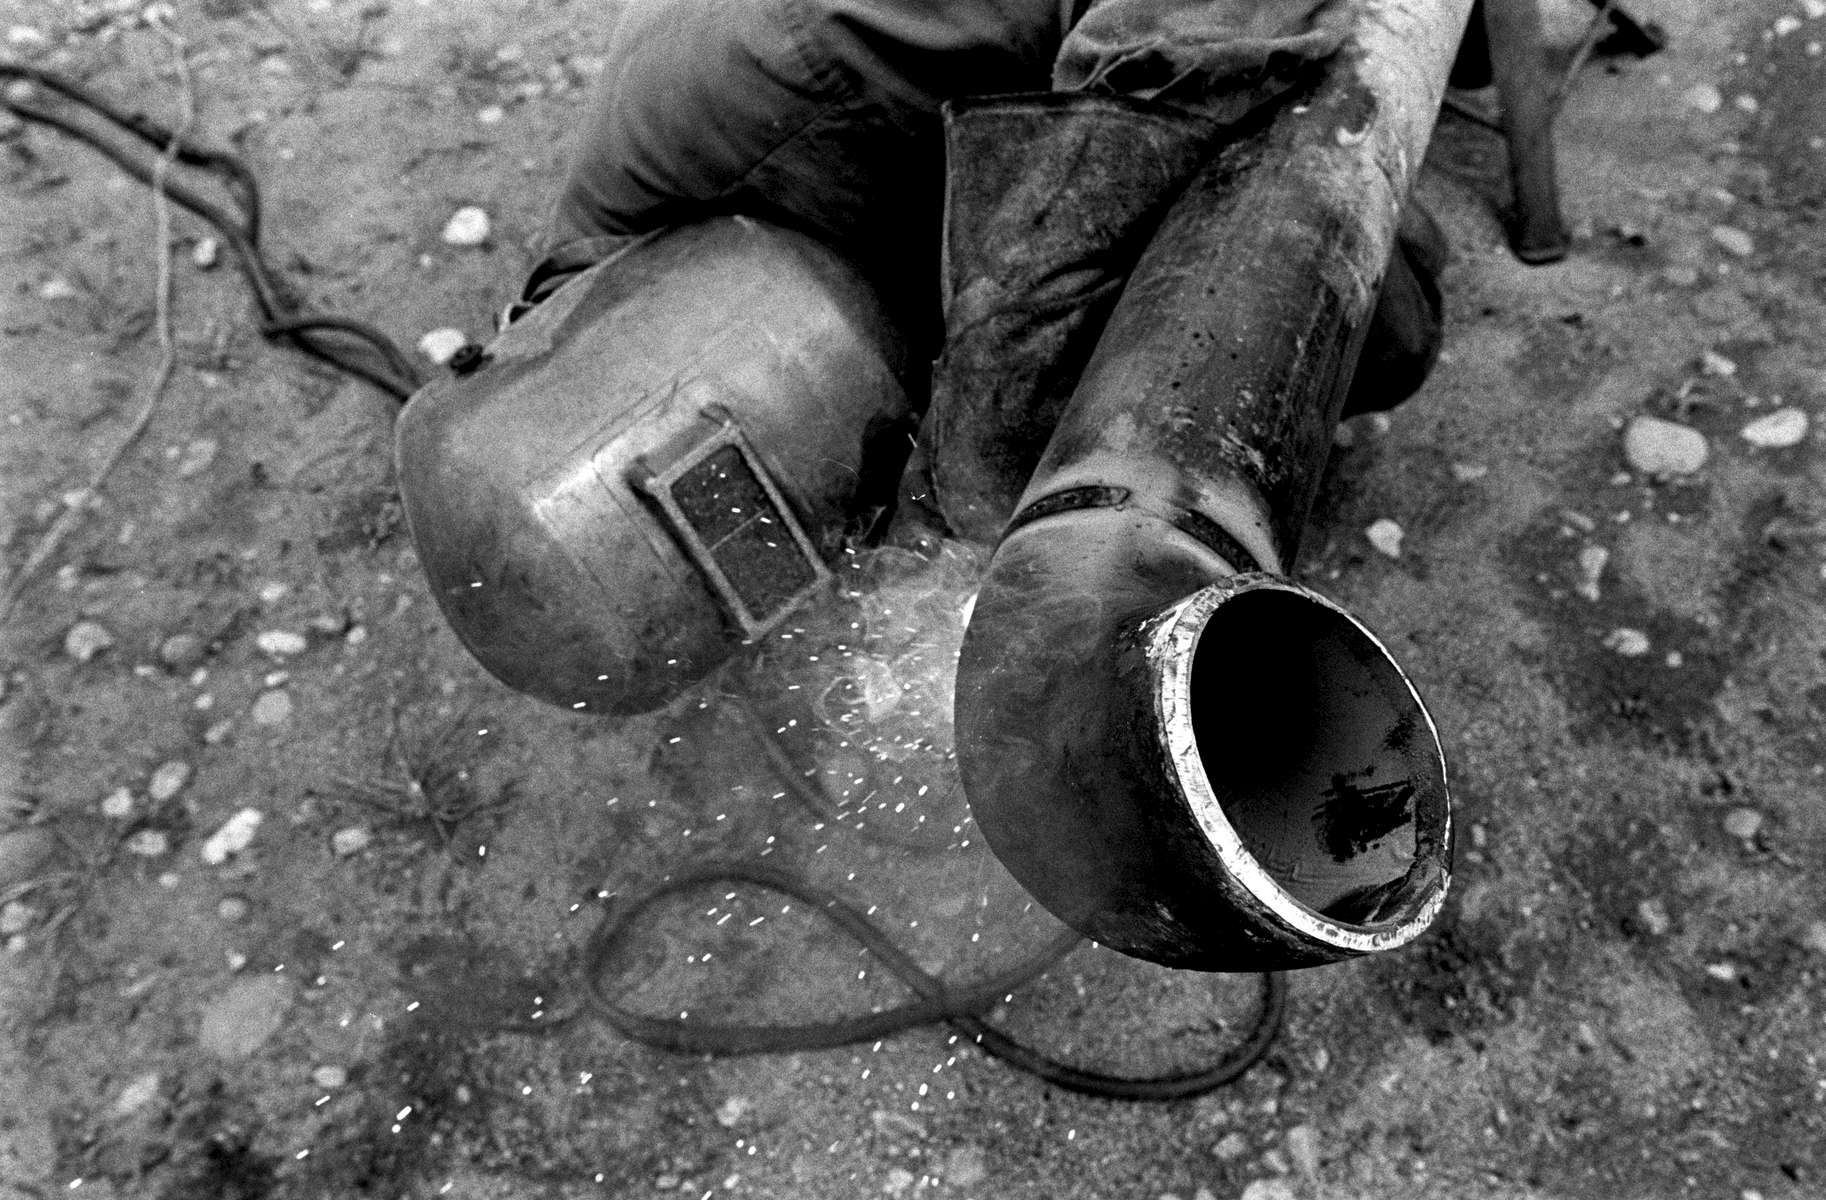 Pipeline worker in Tarapoa, Ecuador 2000